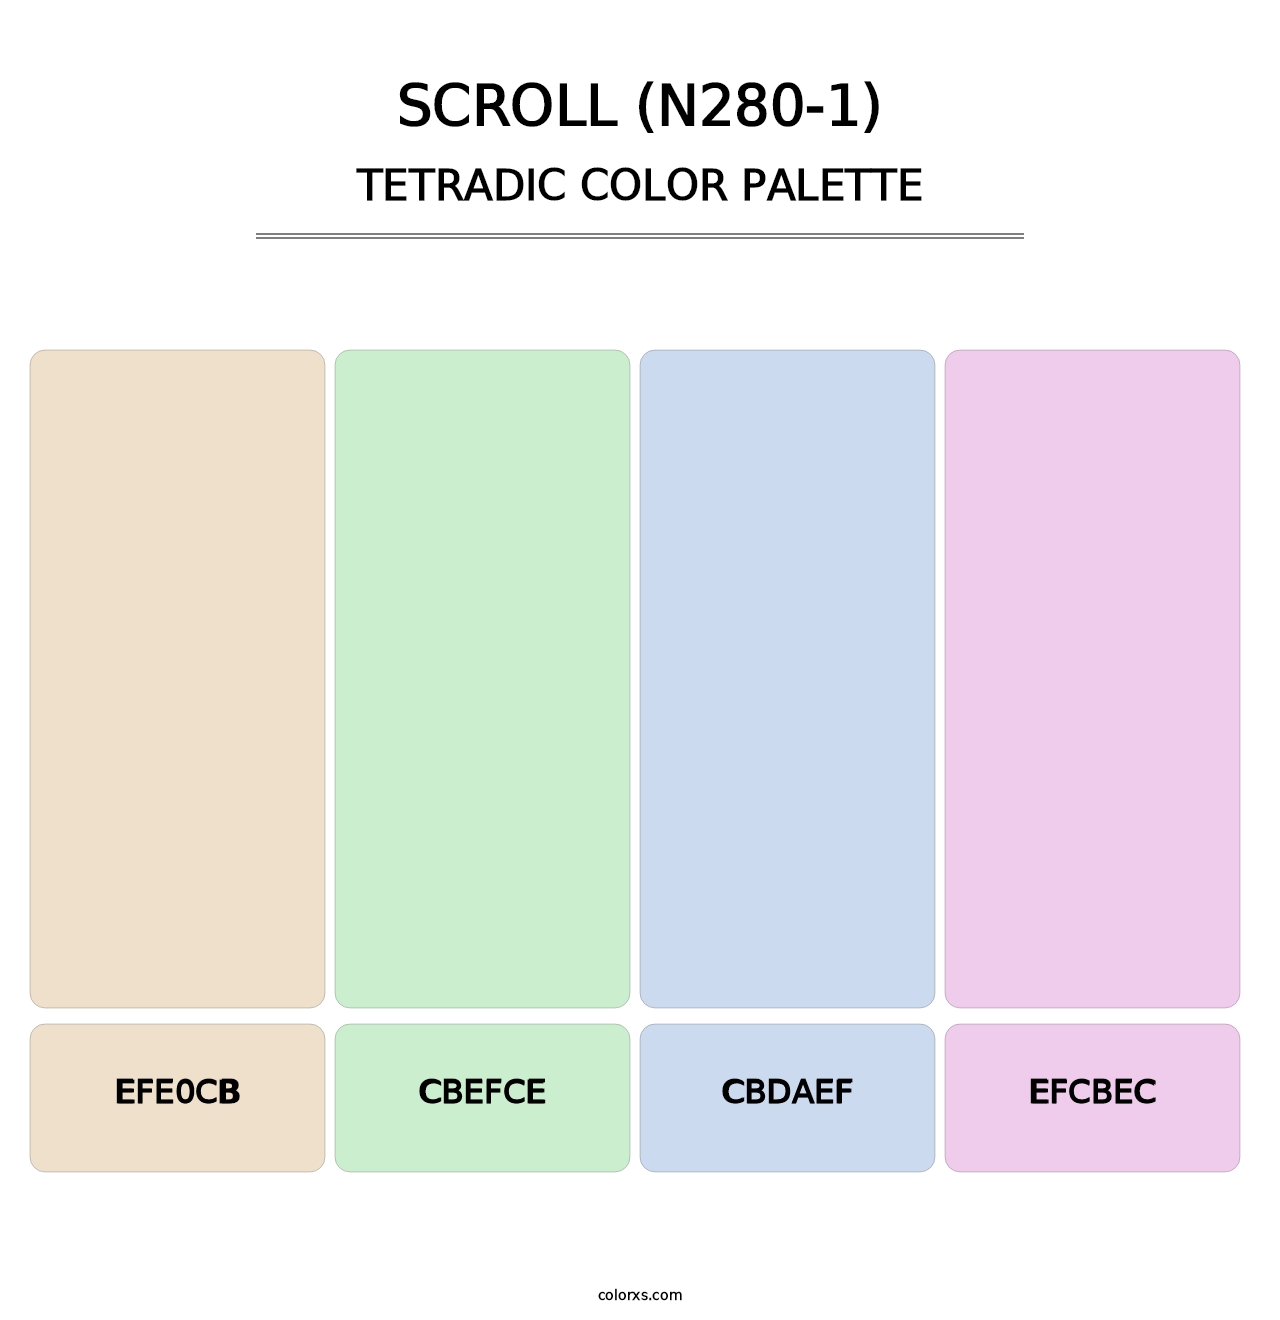 Scroll (N280-1) - Tetradic Color Palette